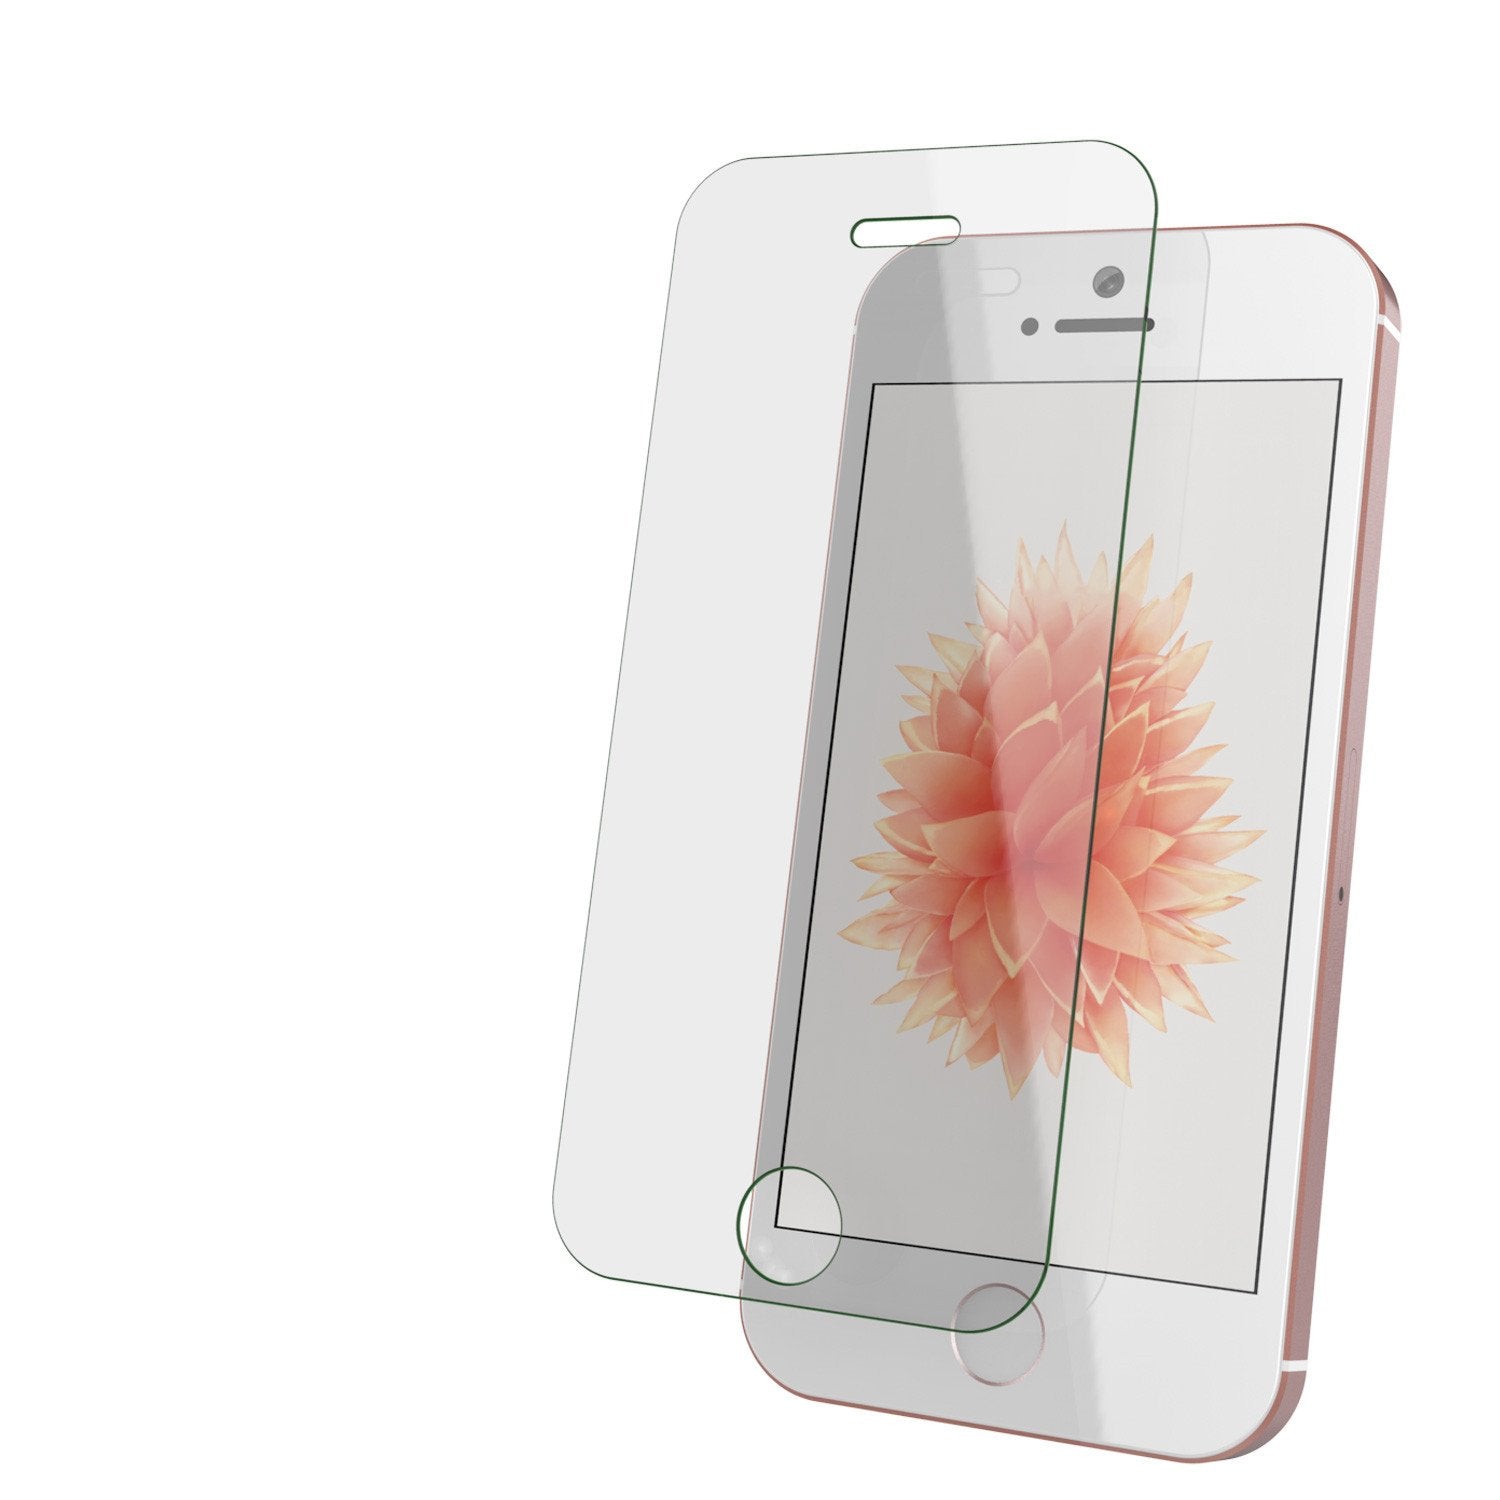 terugvallen Alfabetische volgorde Modderig iPhone 5/5s/5c Screen Protector - Punkcase Glass SHIELD